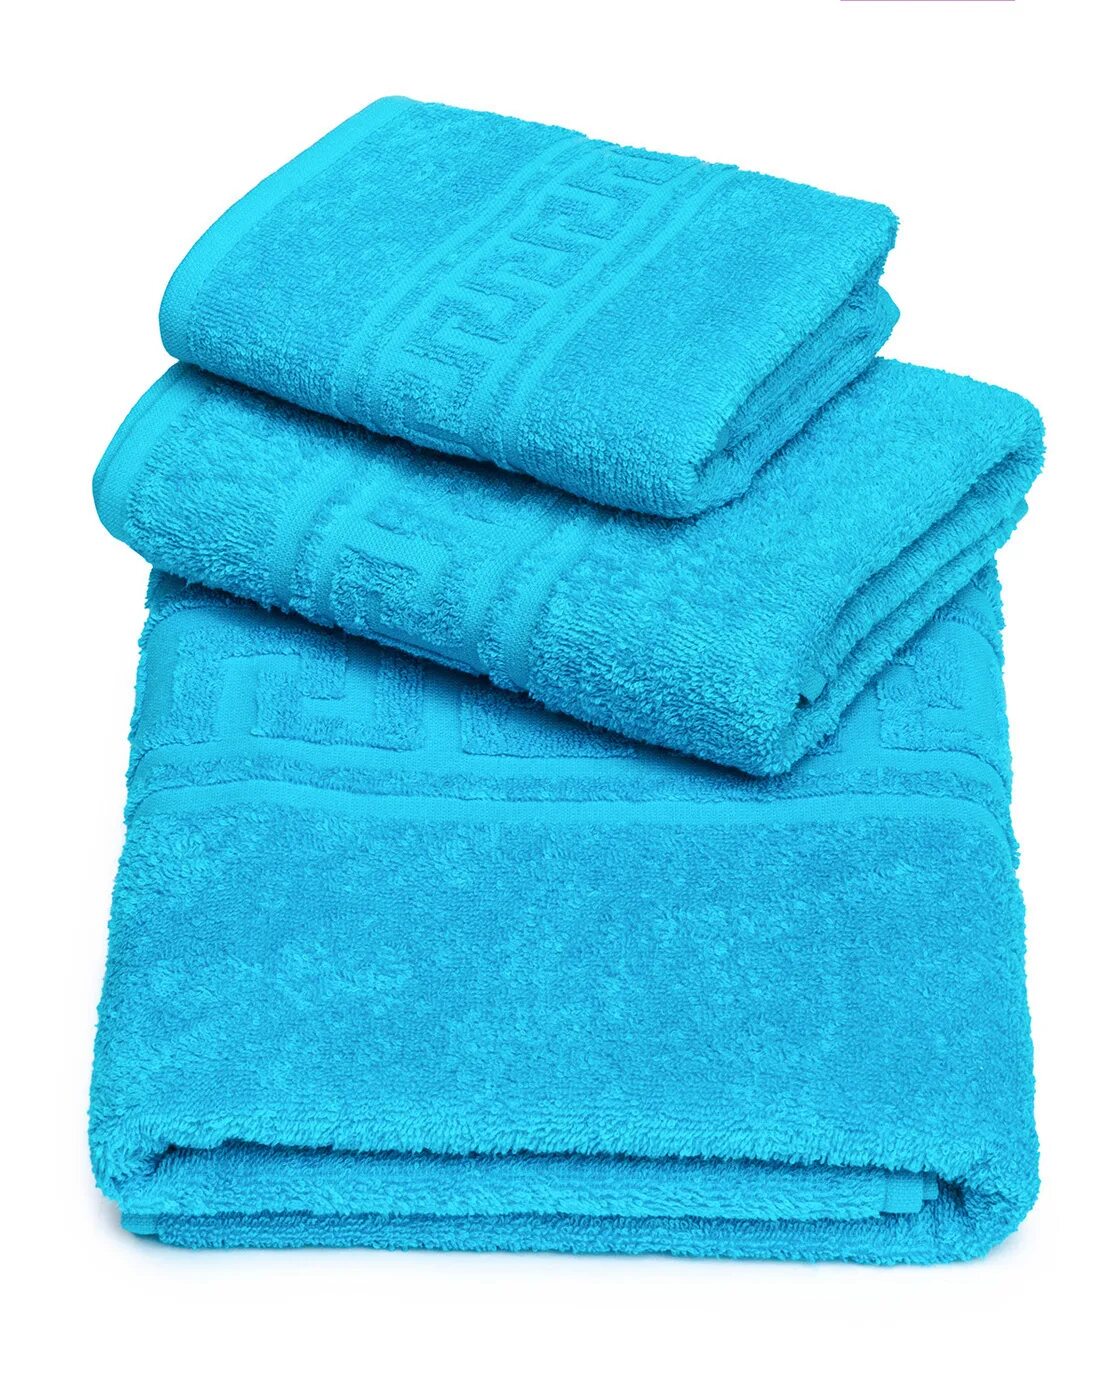 Мир полотенце. Баракат Текс. Мир полотенец. Полотенце банное 70 140 купить. Купить банные полотенца в интернет магазине.